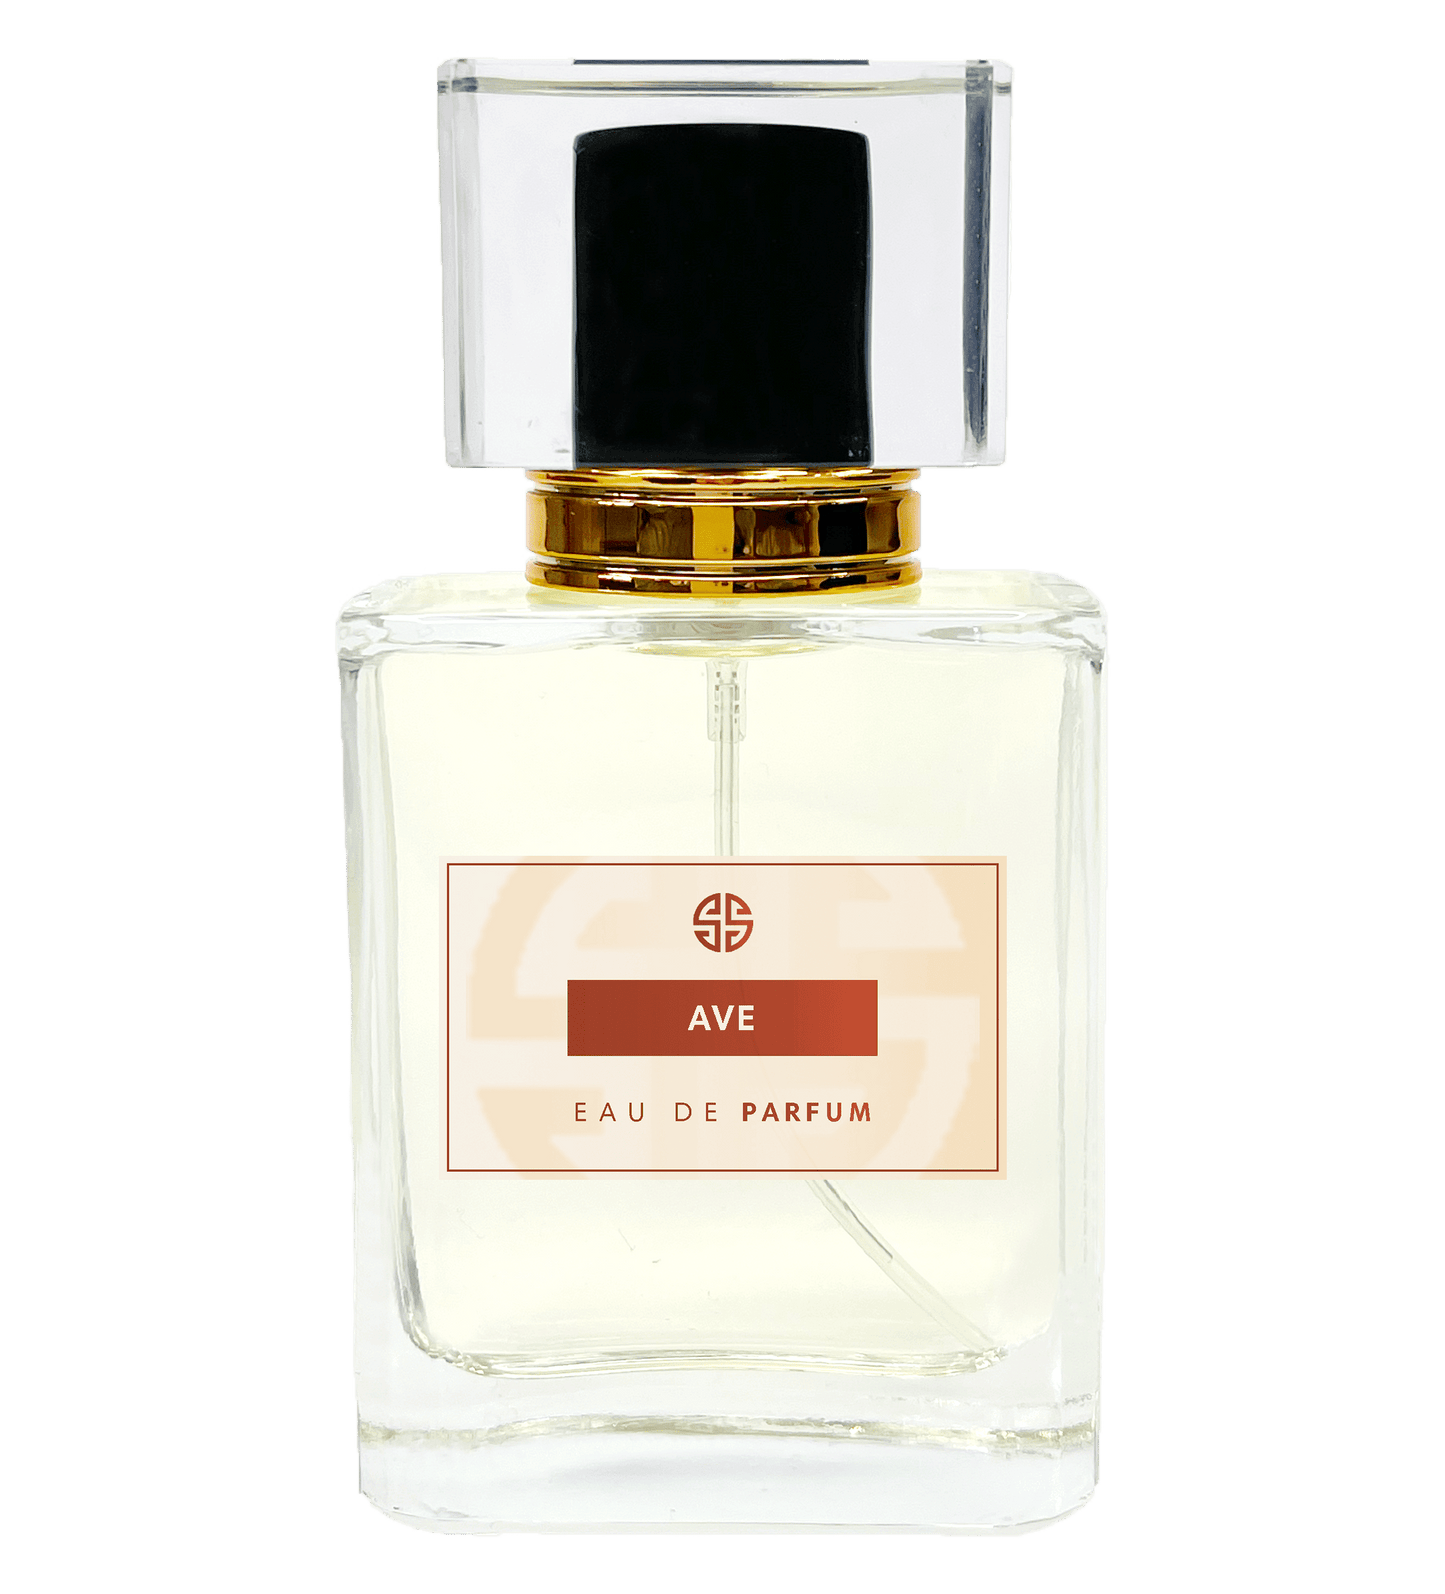 Aventus parfum - Similar Scent AVE - undefined